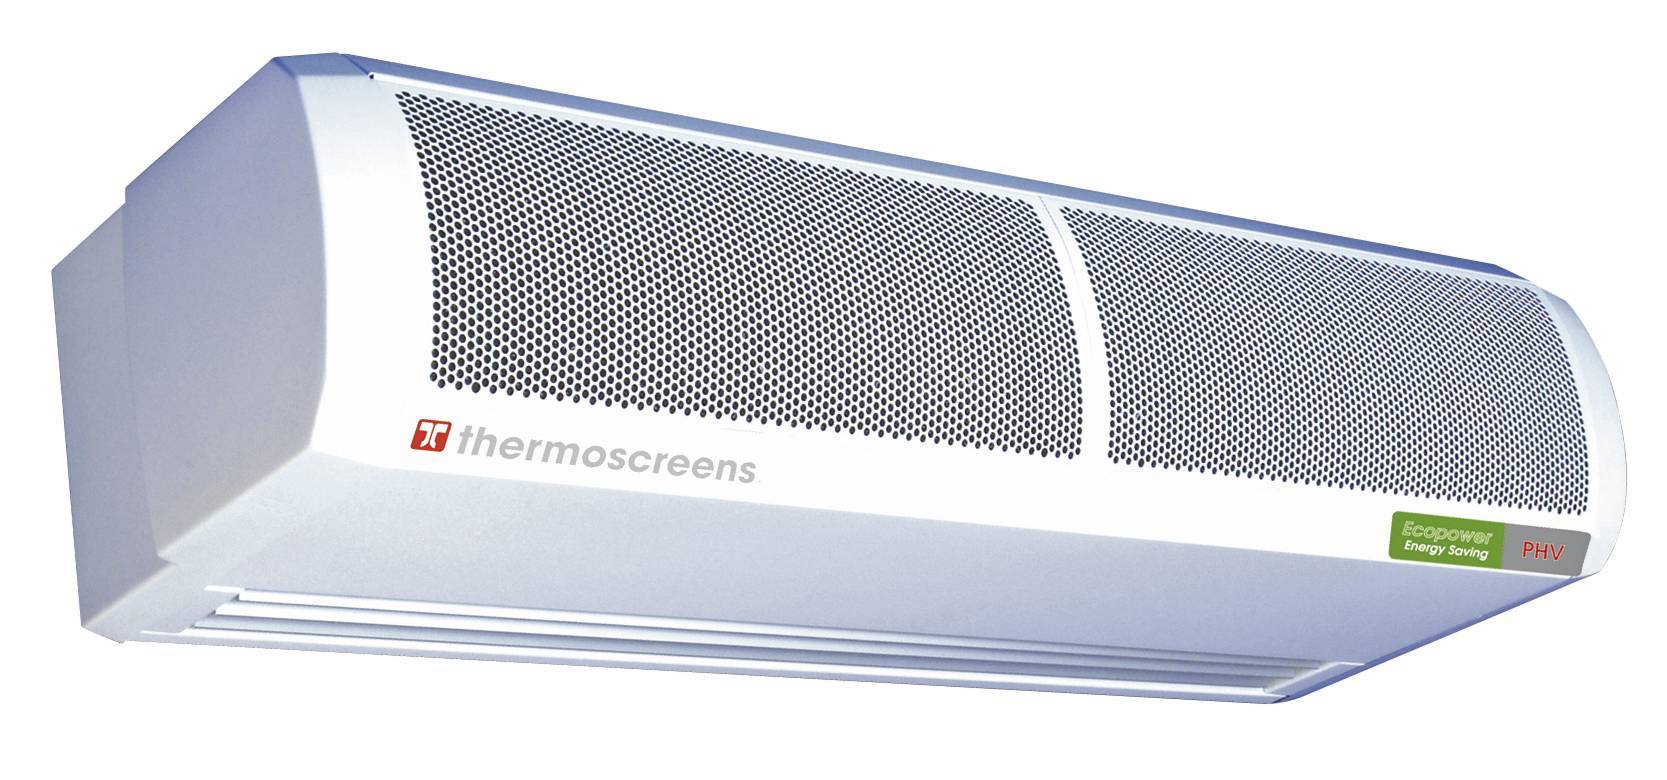 Купить воздушная завеса Thermoscreens C1500ER EE NT в Киеве